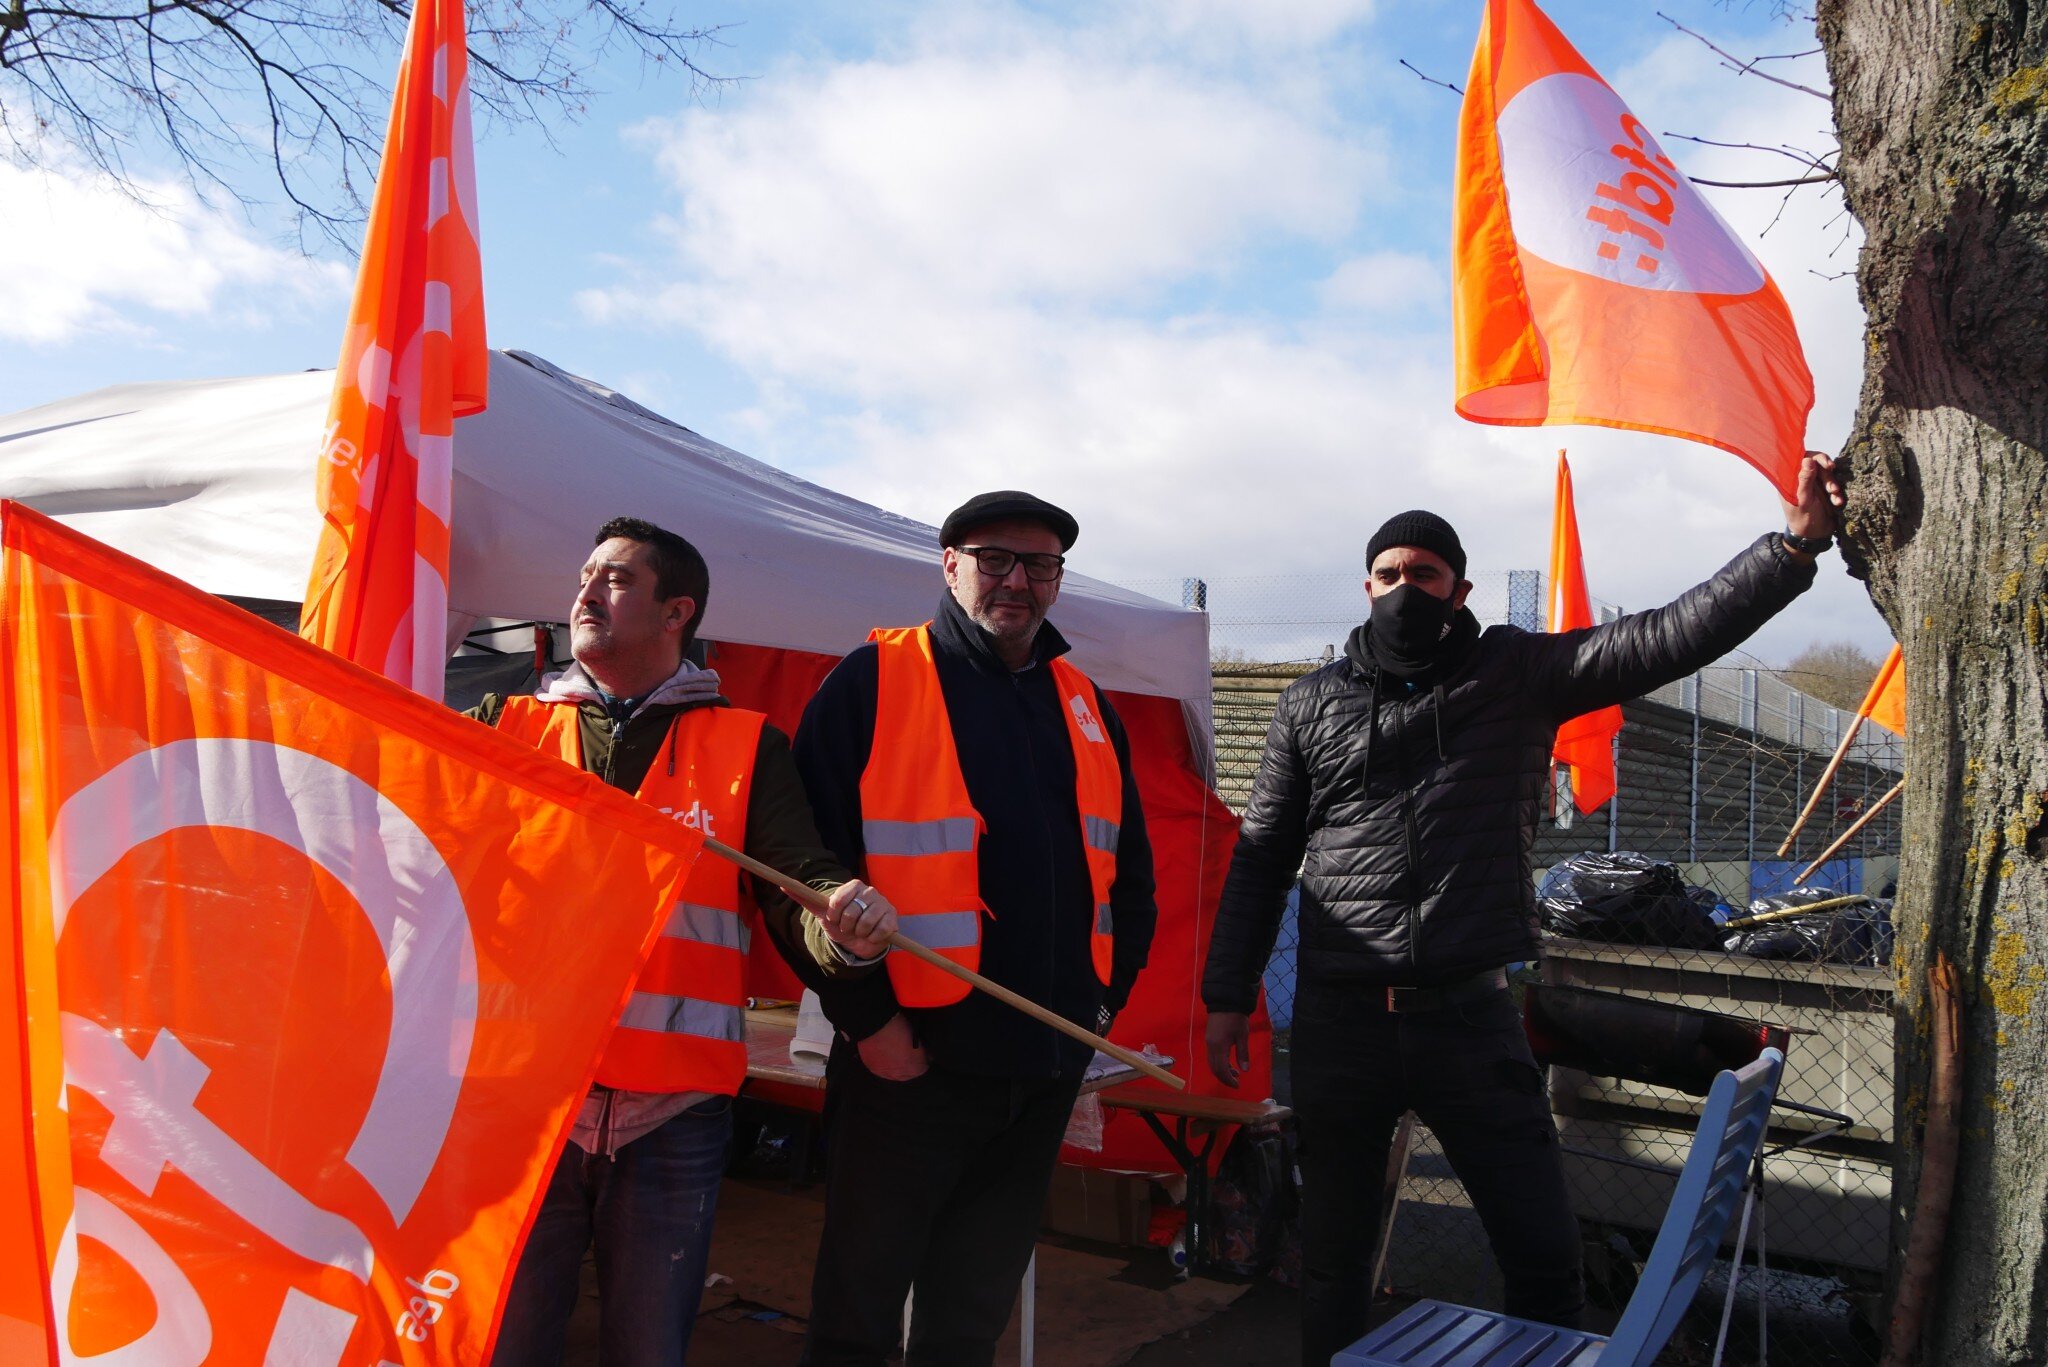 Des conducteurs de bus en grève pour plus d’équité sociale à Keolis Striebig